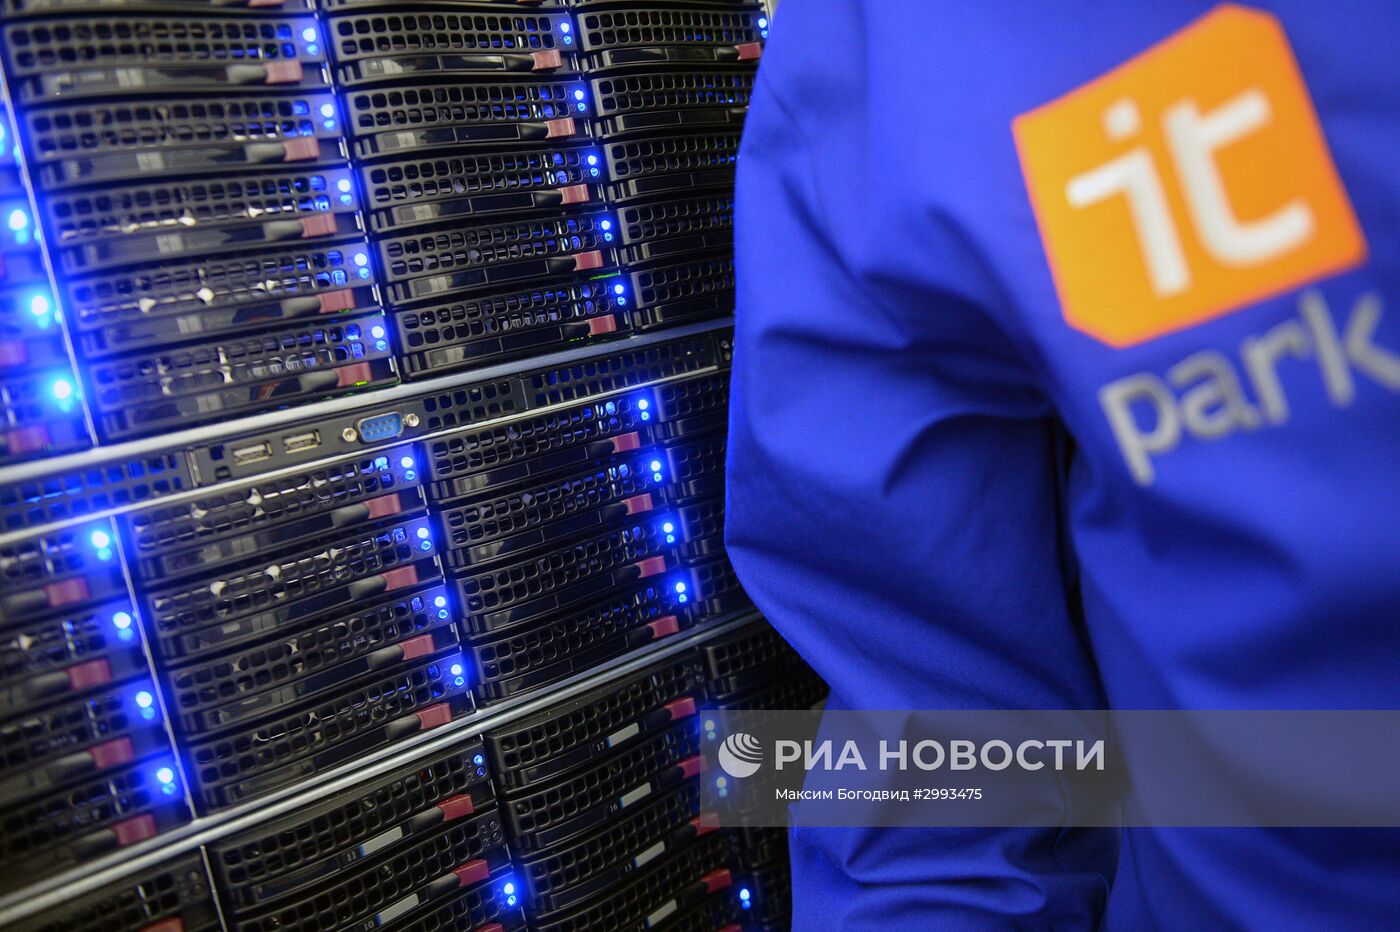 Дата-центр IT-парка в Казани